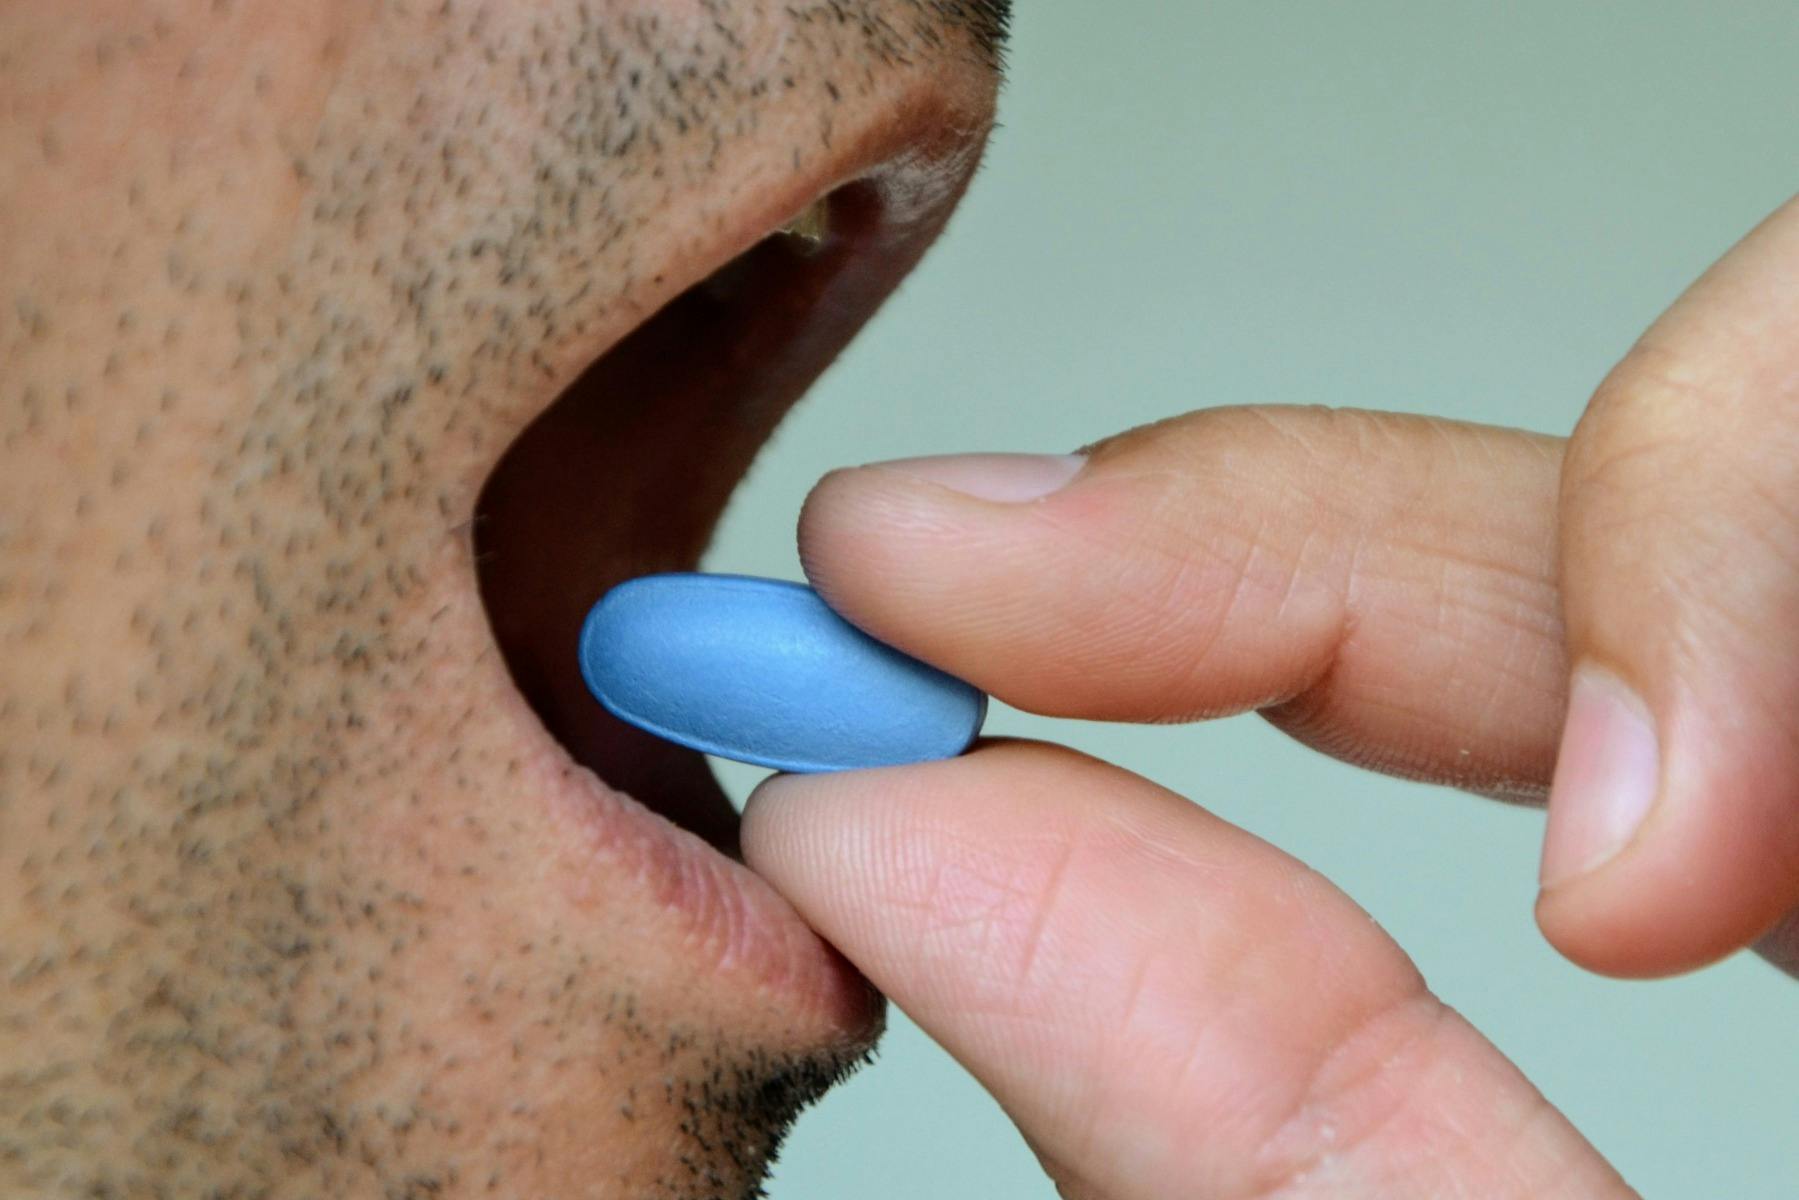 Viagra-Pille (die blaue Pille) wird einem Mann in den Mund gelegt